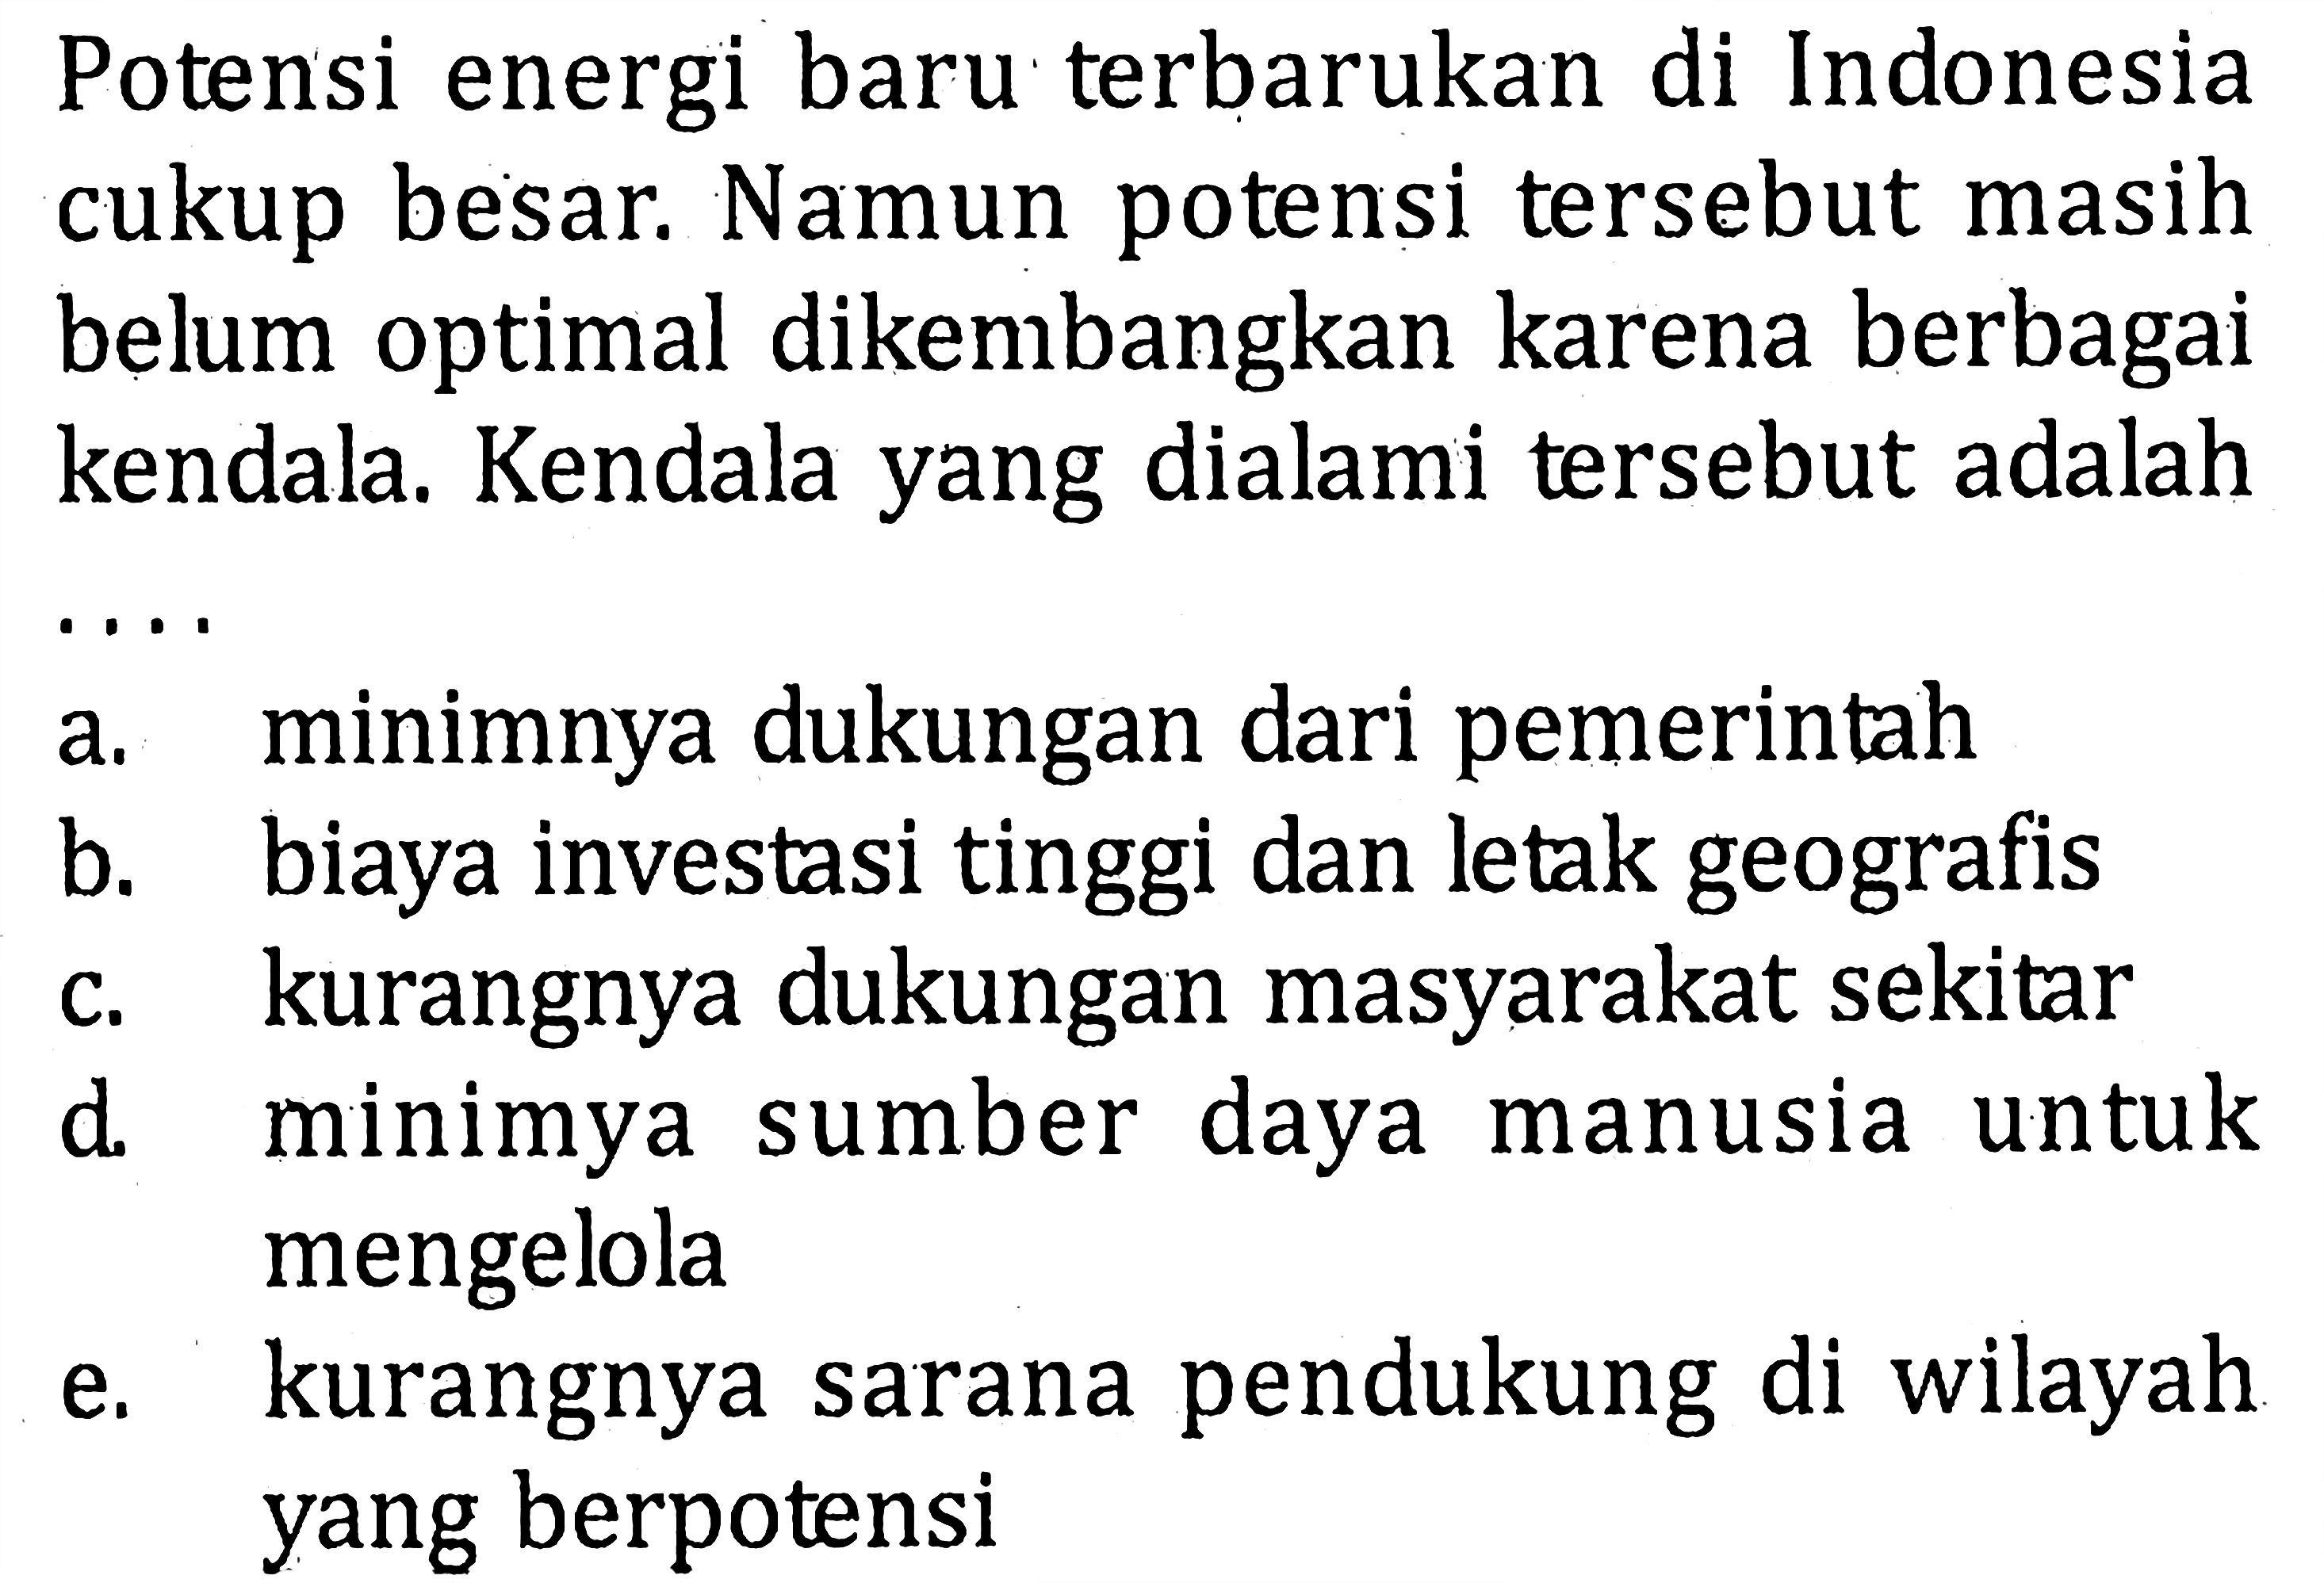 Potensi energi baru terbarukan di Indonesia cukup besar. Namun potensi tersebut masih belum optimal dikembangkan karena berbagai kendala. Kendala yang dialami tersebut adalaha. minimnya dukungan dari pemerintahb. biaya investasi tinggi dan letak geografisc. kurangnya dukungan masyarakat sekitard. minimya sumber daya manusia untuk mengelolae. kurangnya sarana pendukung di wilayah yang berpotensi